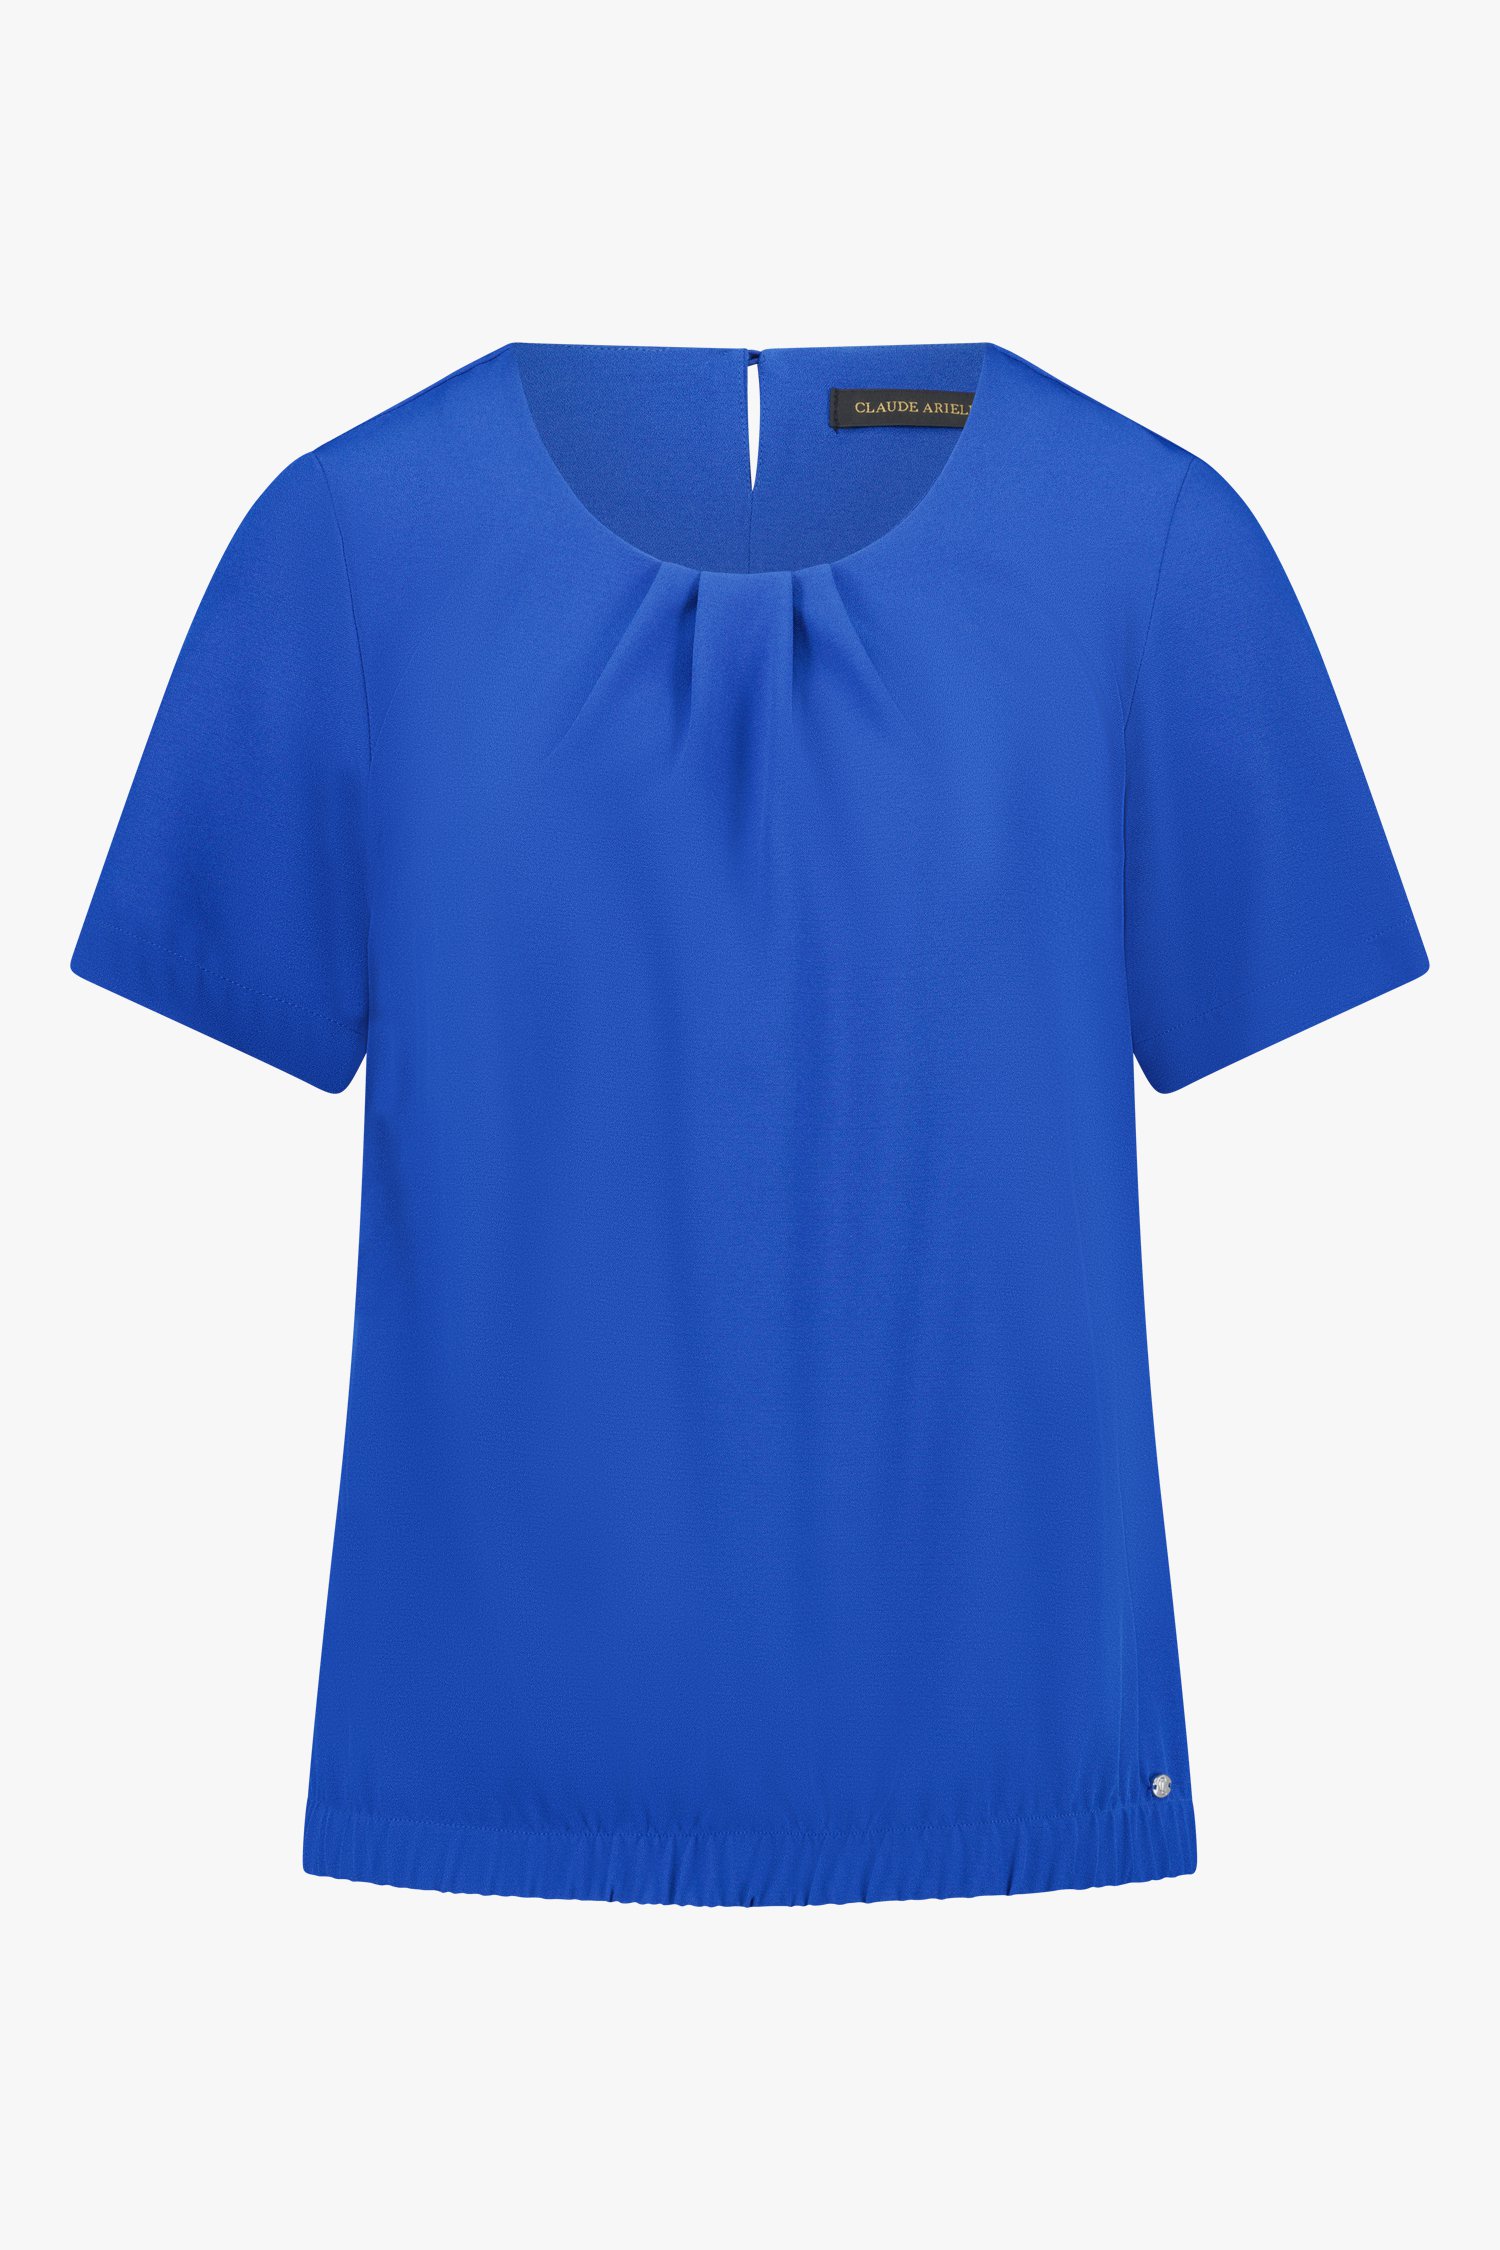 Blauwe blouse met korte mouwen van Claude Arielle voor Dames